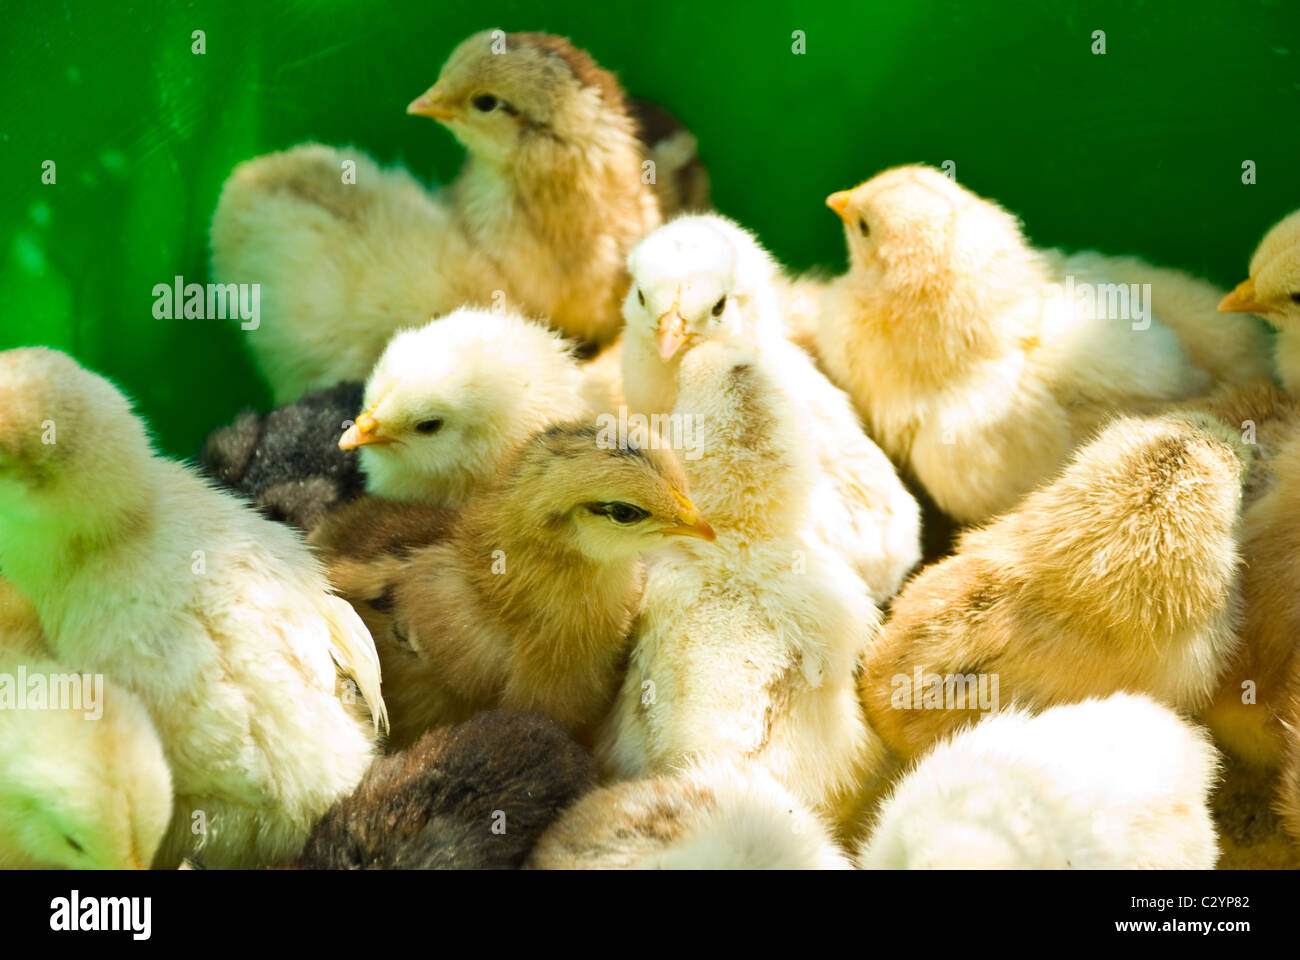 Nahaufnahme von viele kleine gelbe Huhn Stand in einer grünen Box geschlossen einander Stockfoto